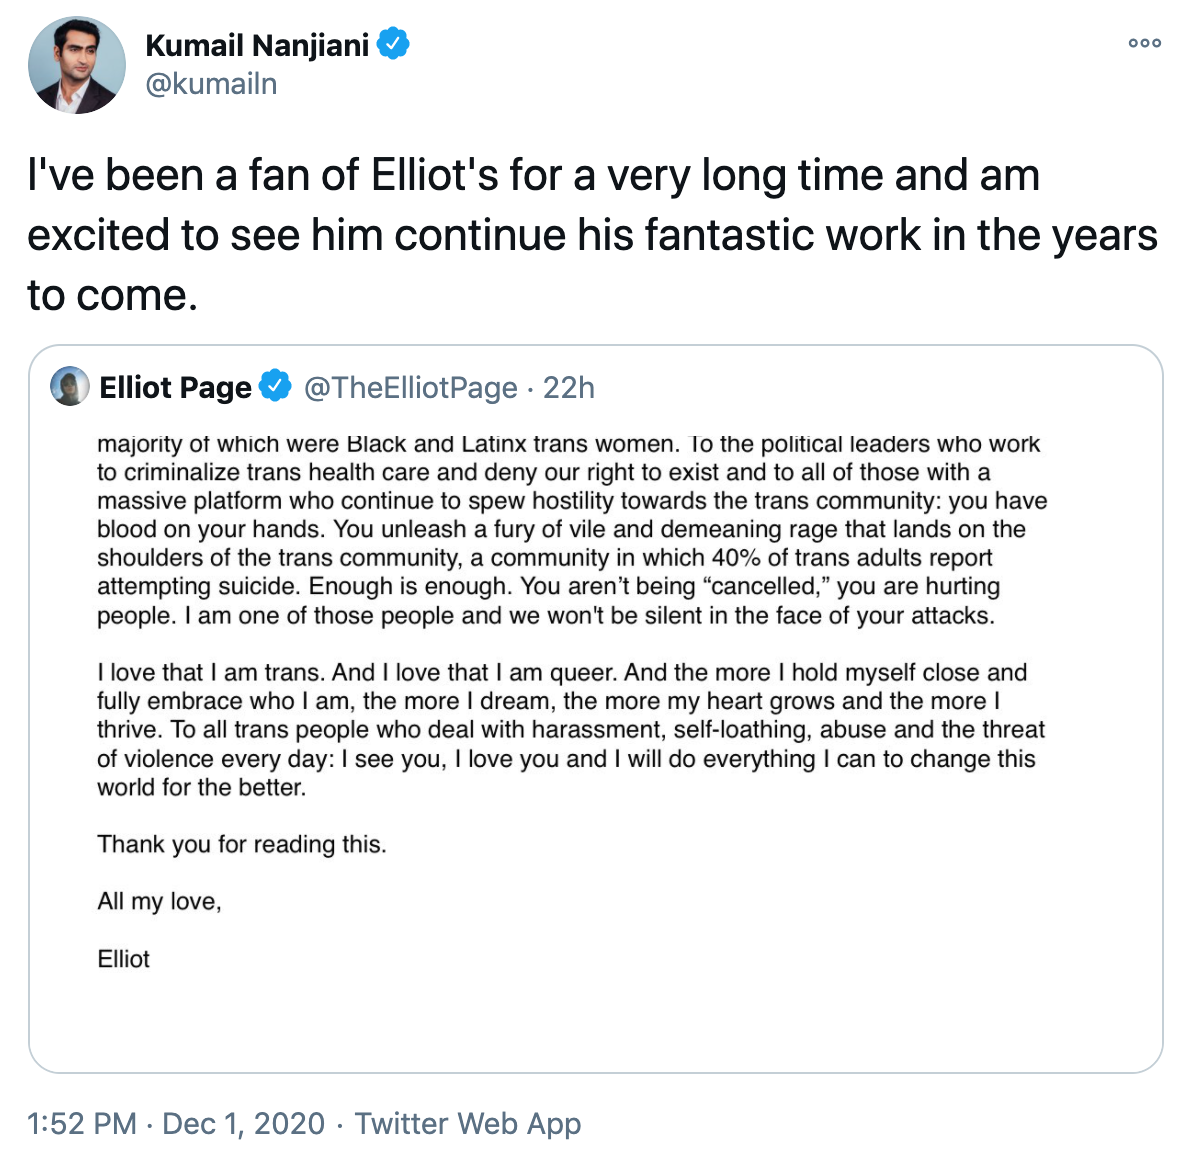 Kumail Nanjiani tweet about Elliot Page